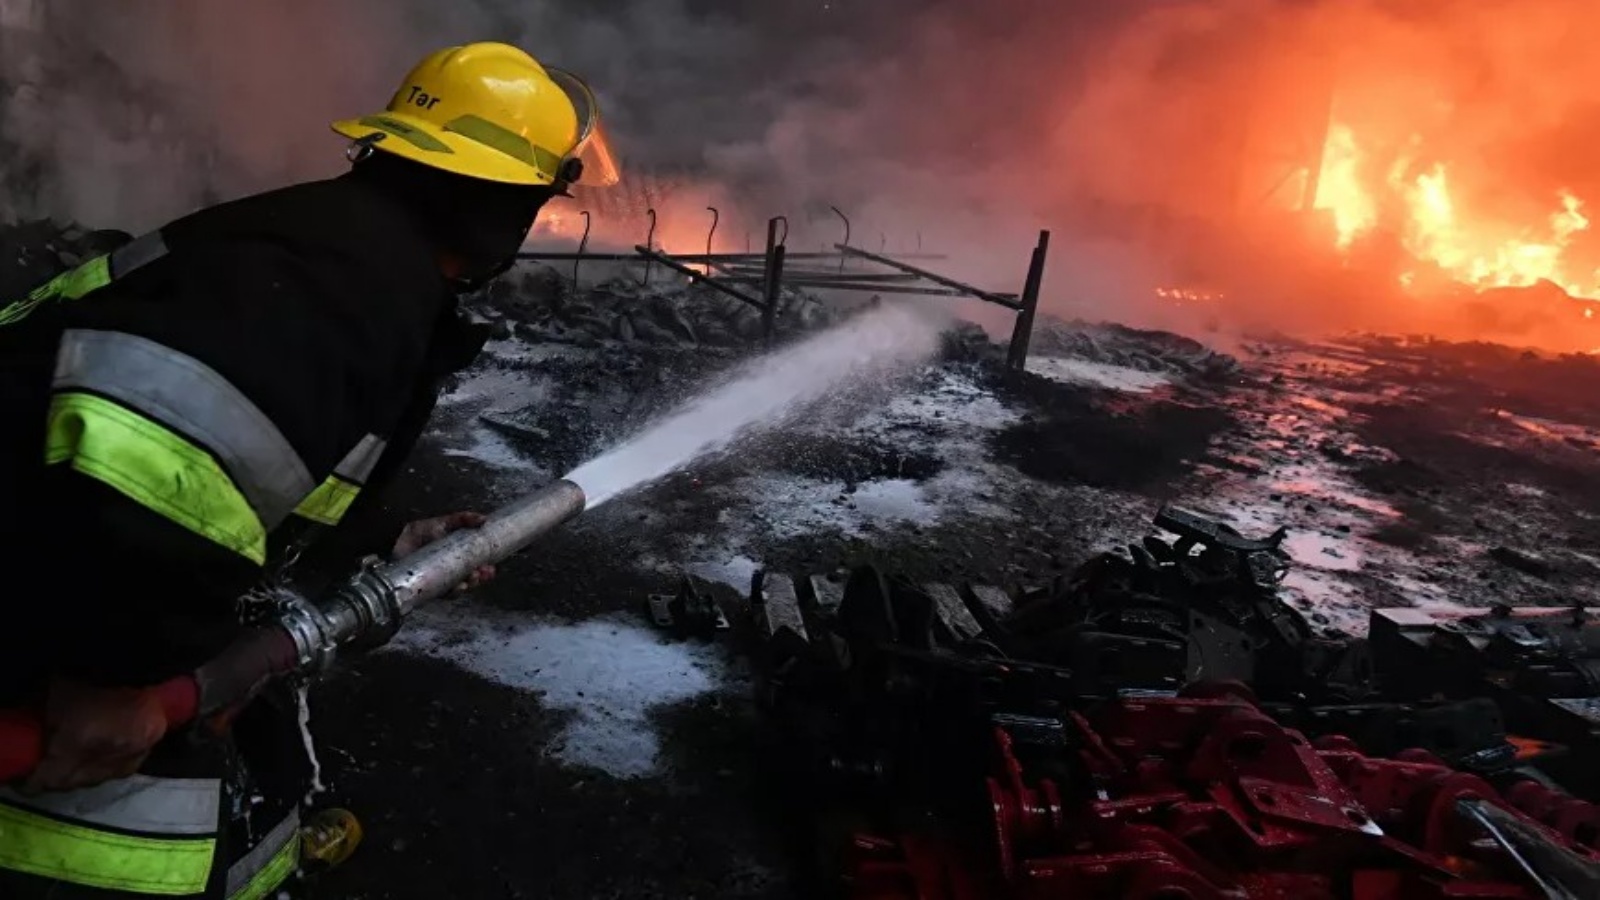 عامل اطفاء في موقع حريق نتيجة قصف في النزاع الأرميني الأذري